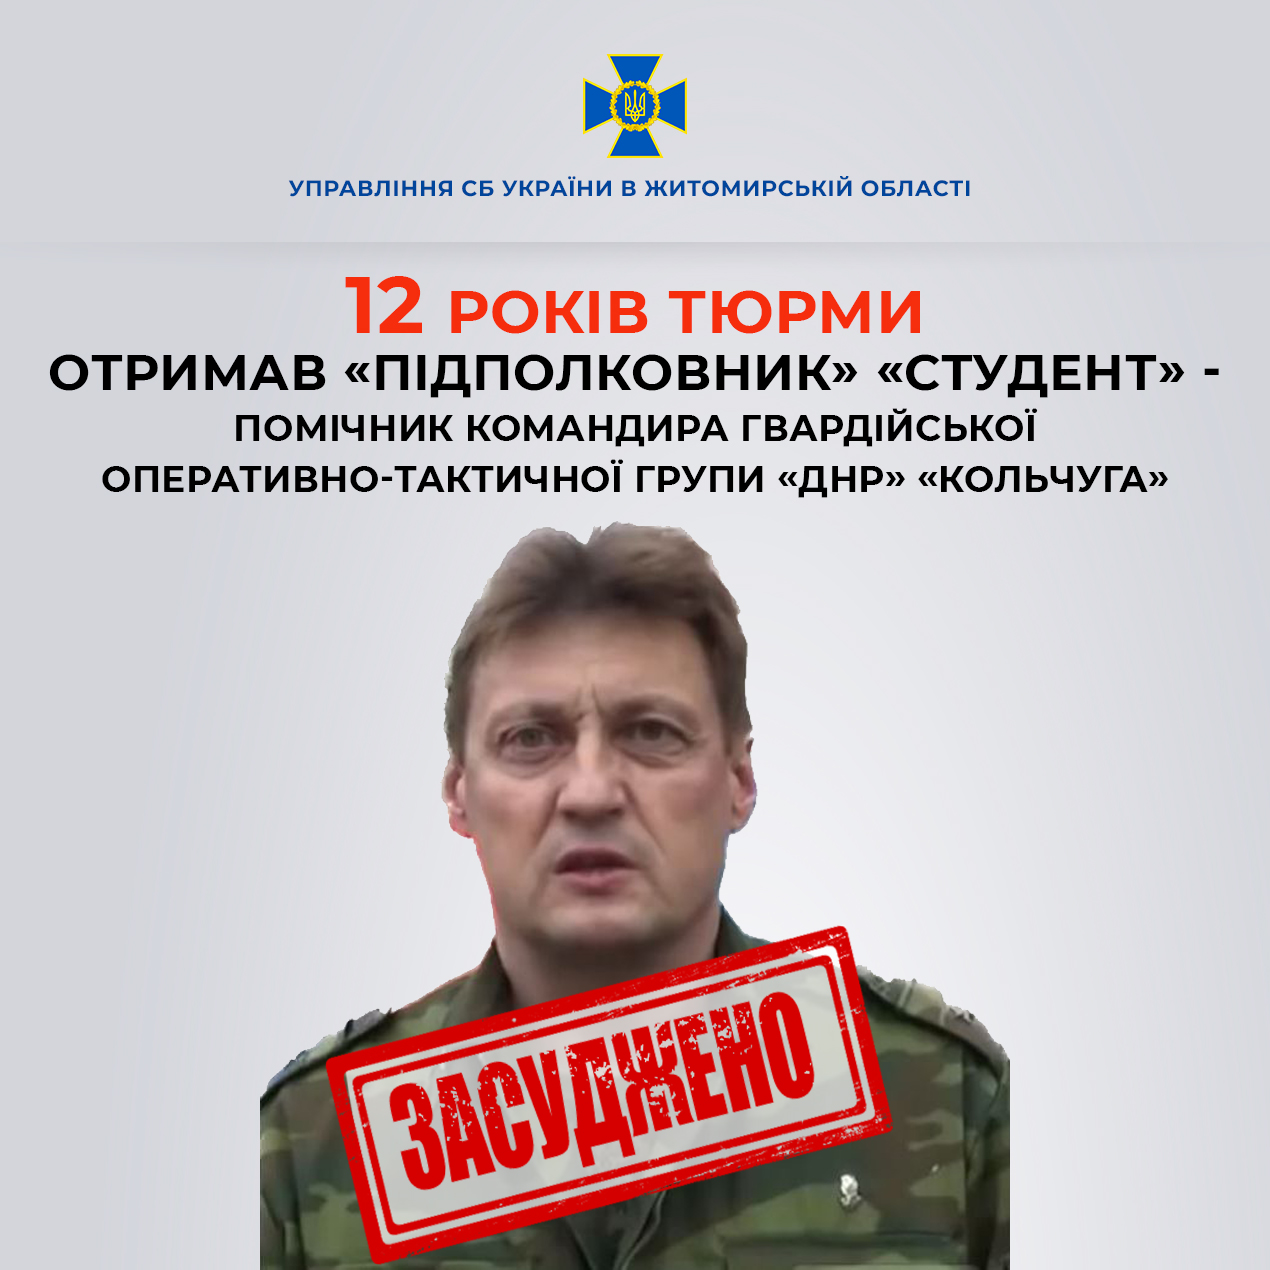 На Житомирщині за матеріалами СБУ 12 років тюрми отримав помічник командира «кольчуги» підполковник «Студент»